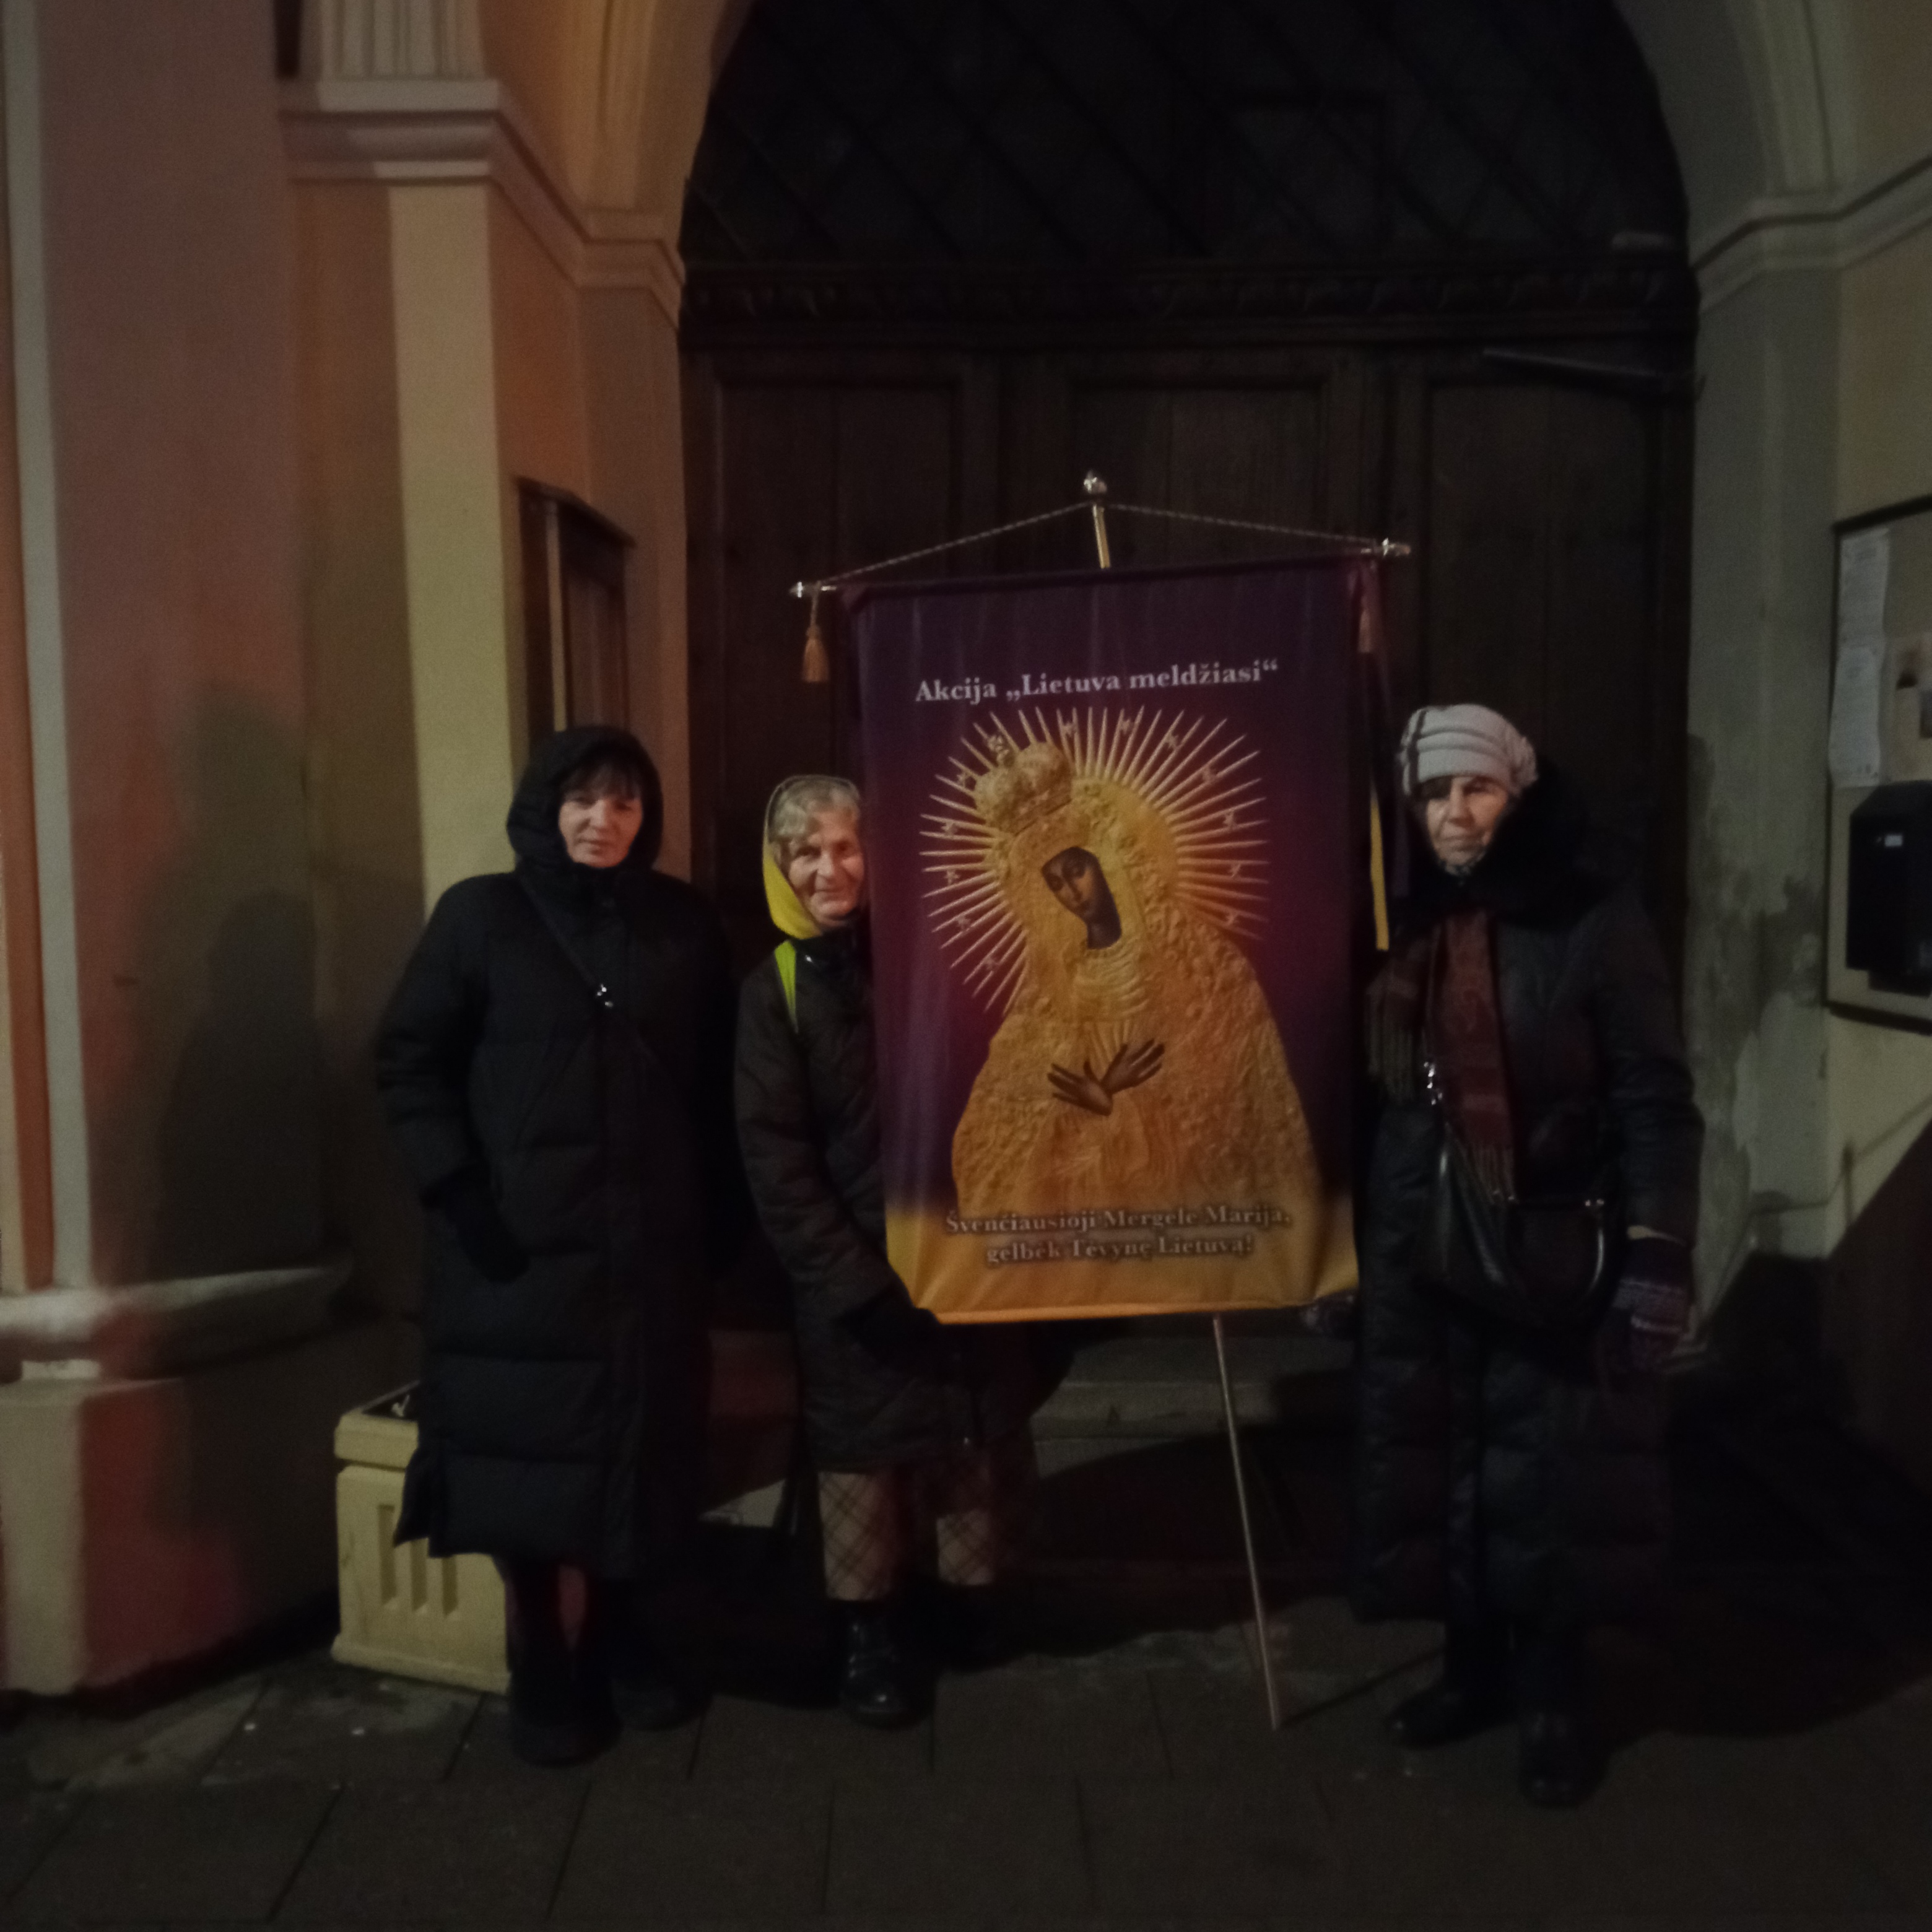 Vilniuje gruodžio 20 d. meldėsi 3 maldininkai
